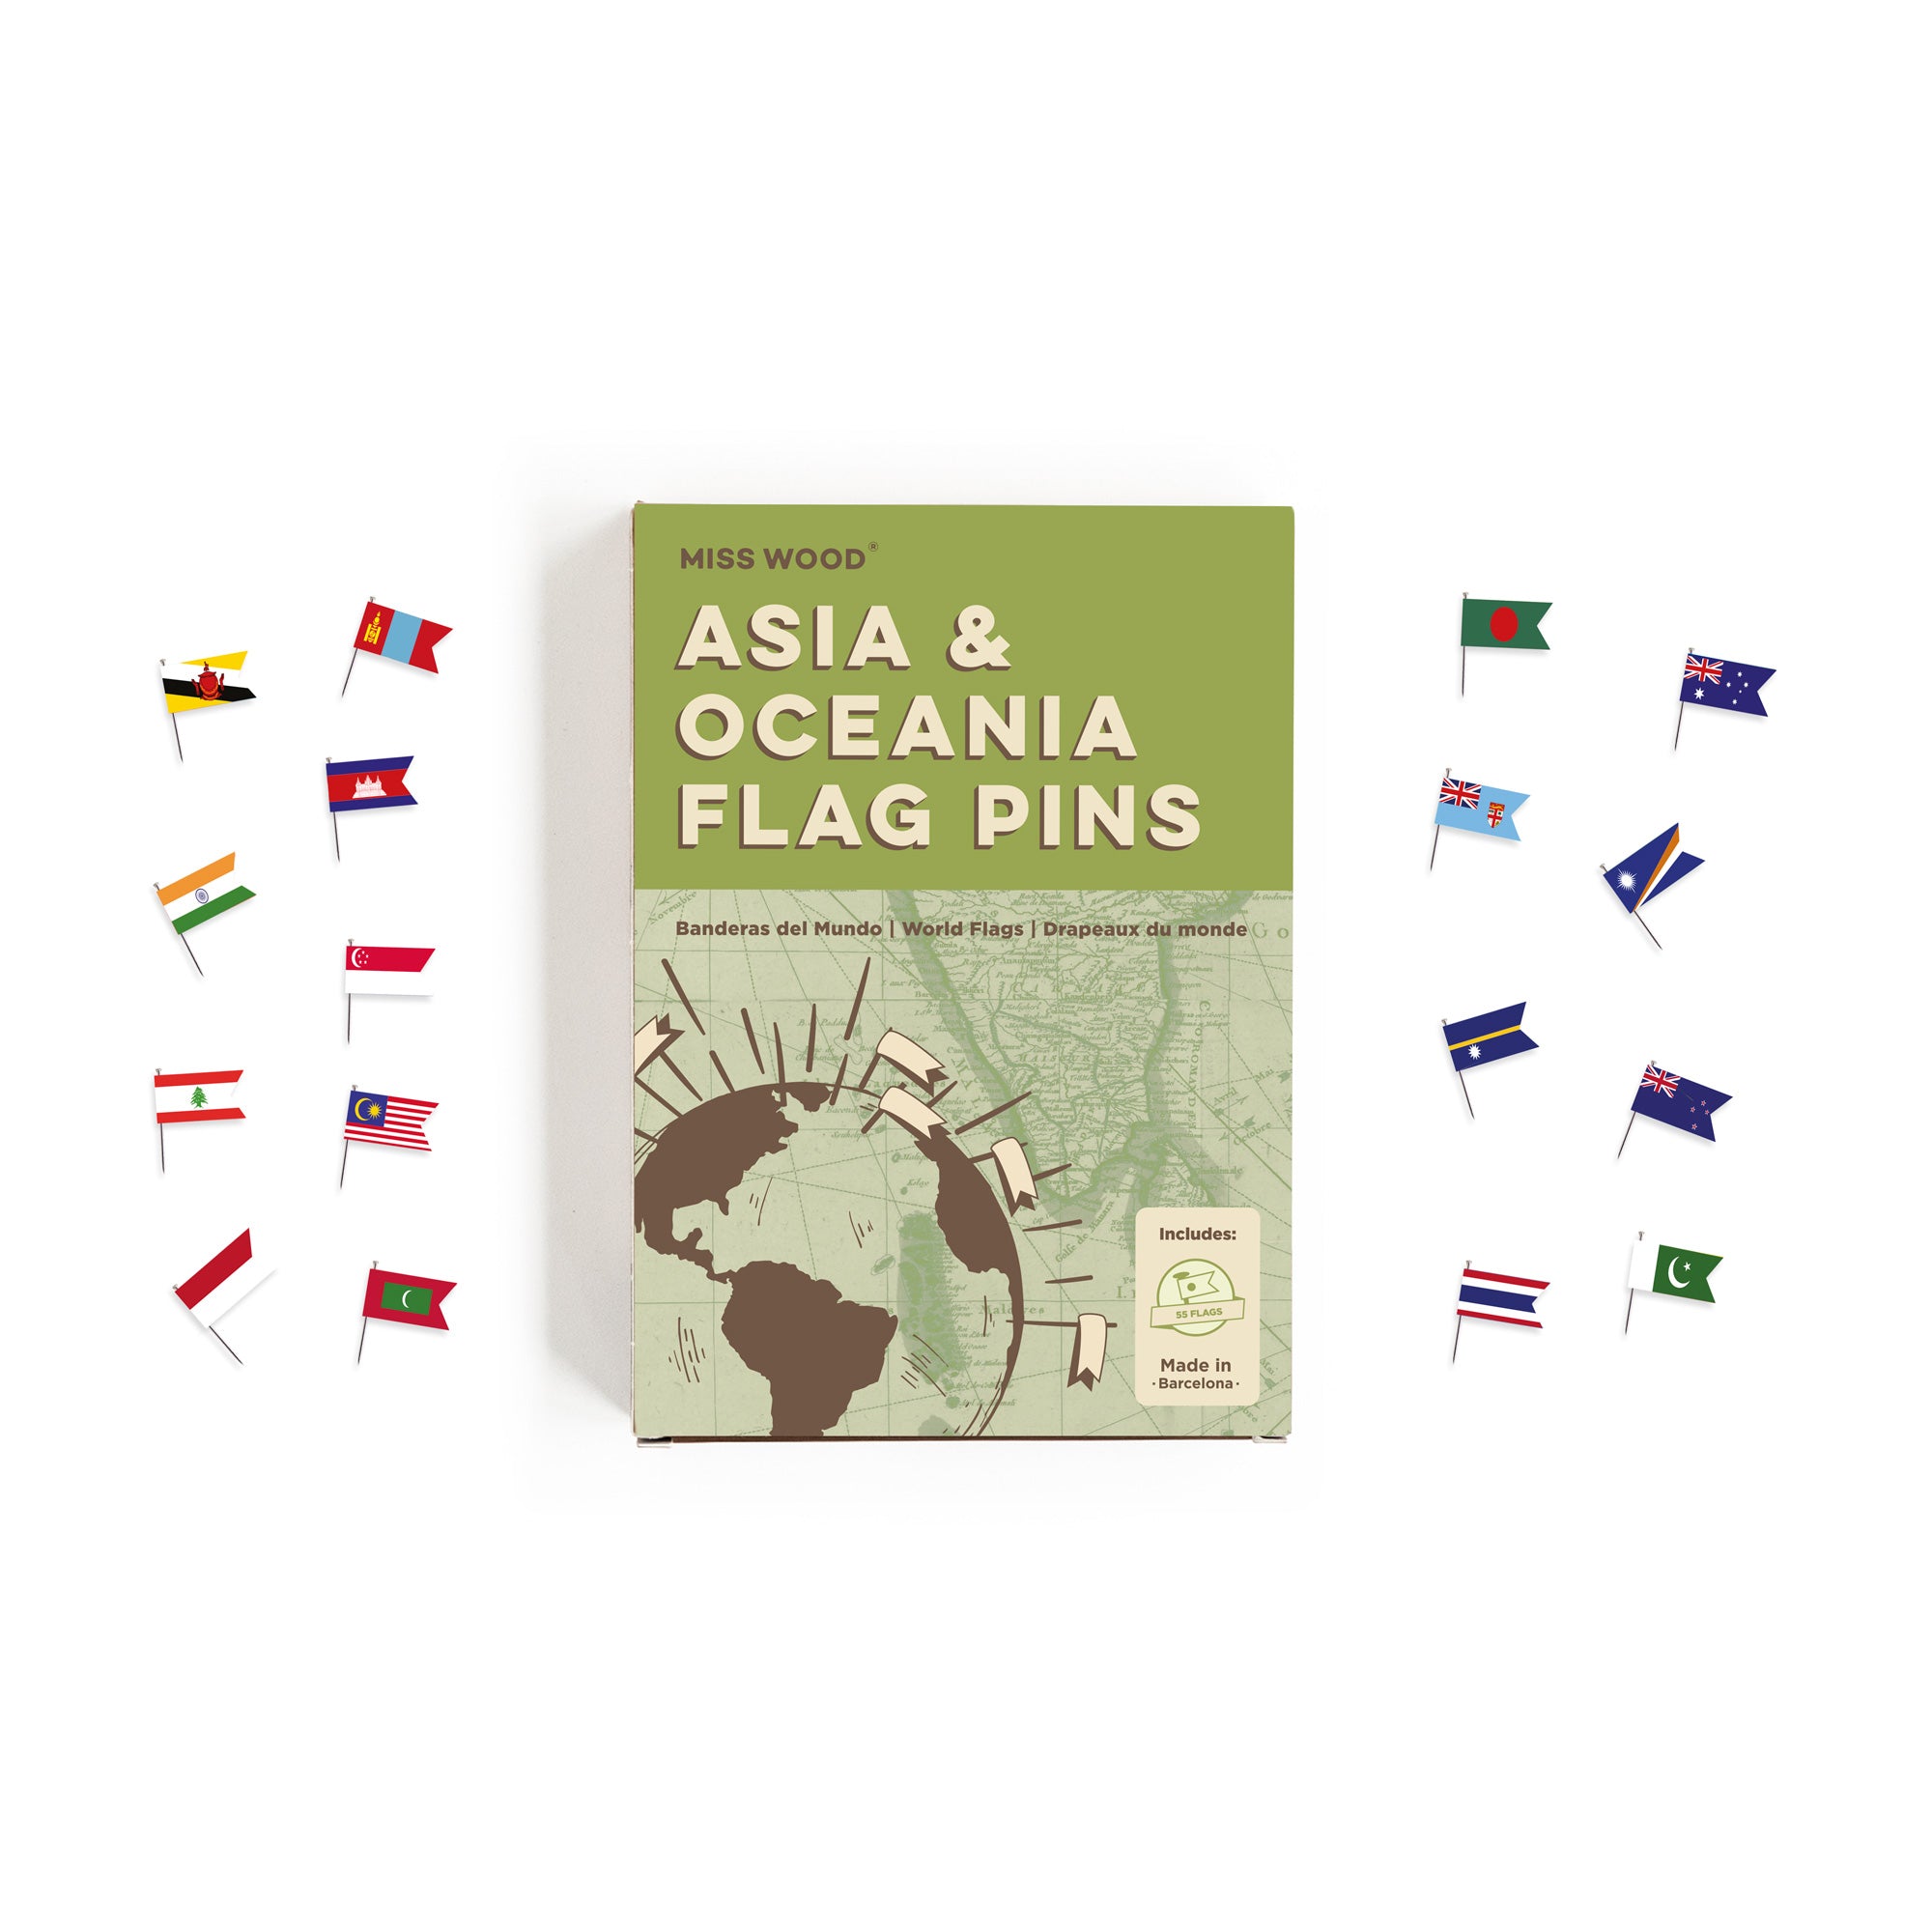 Banderitas del mundo-Asia & Oceania-Asia & Oceania--Misswood